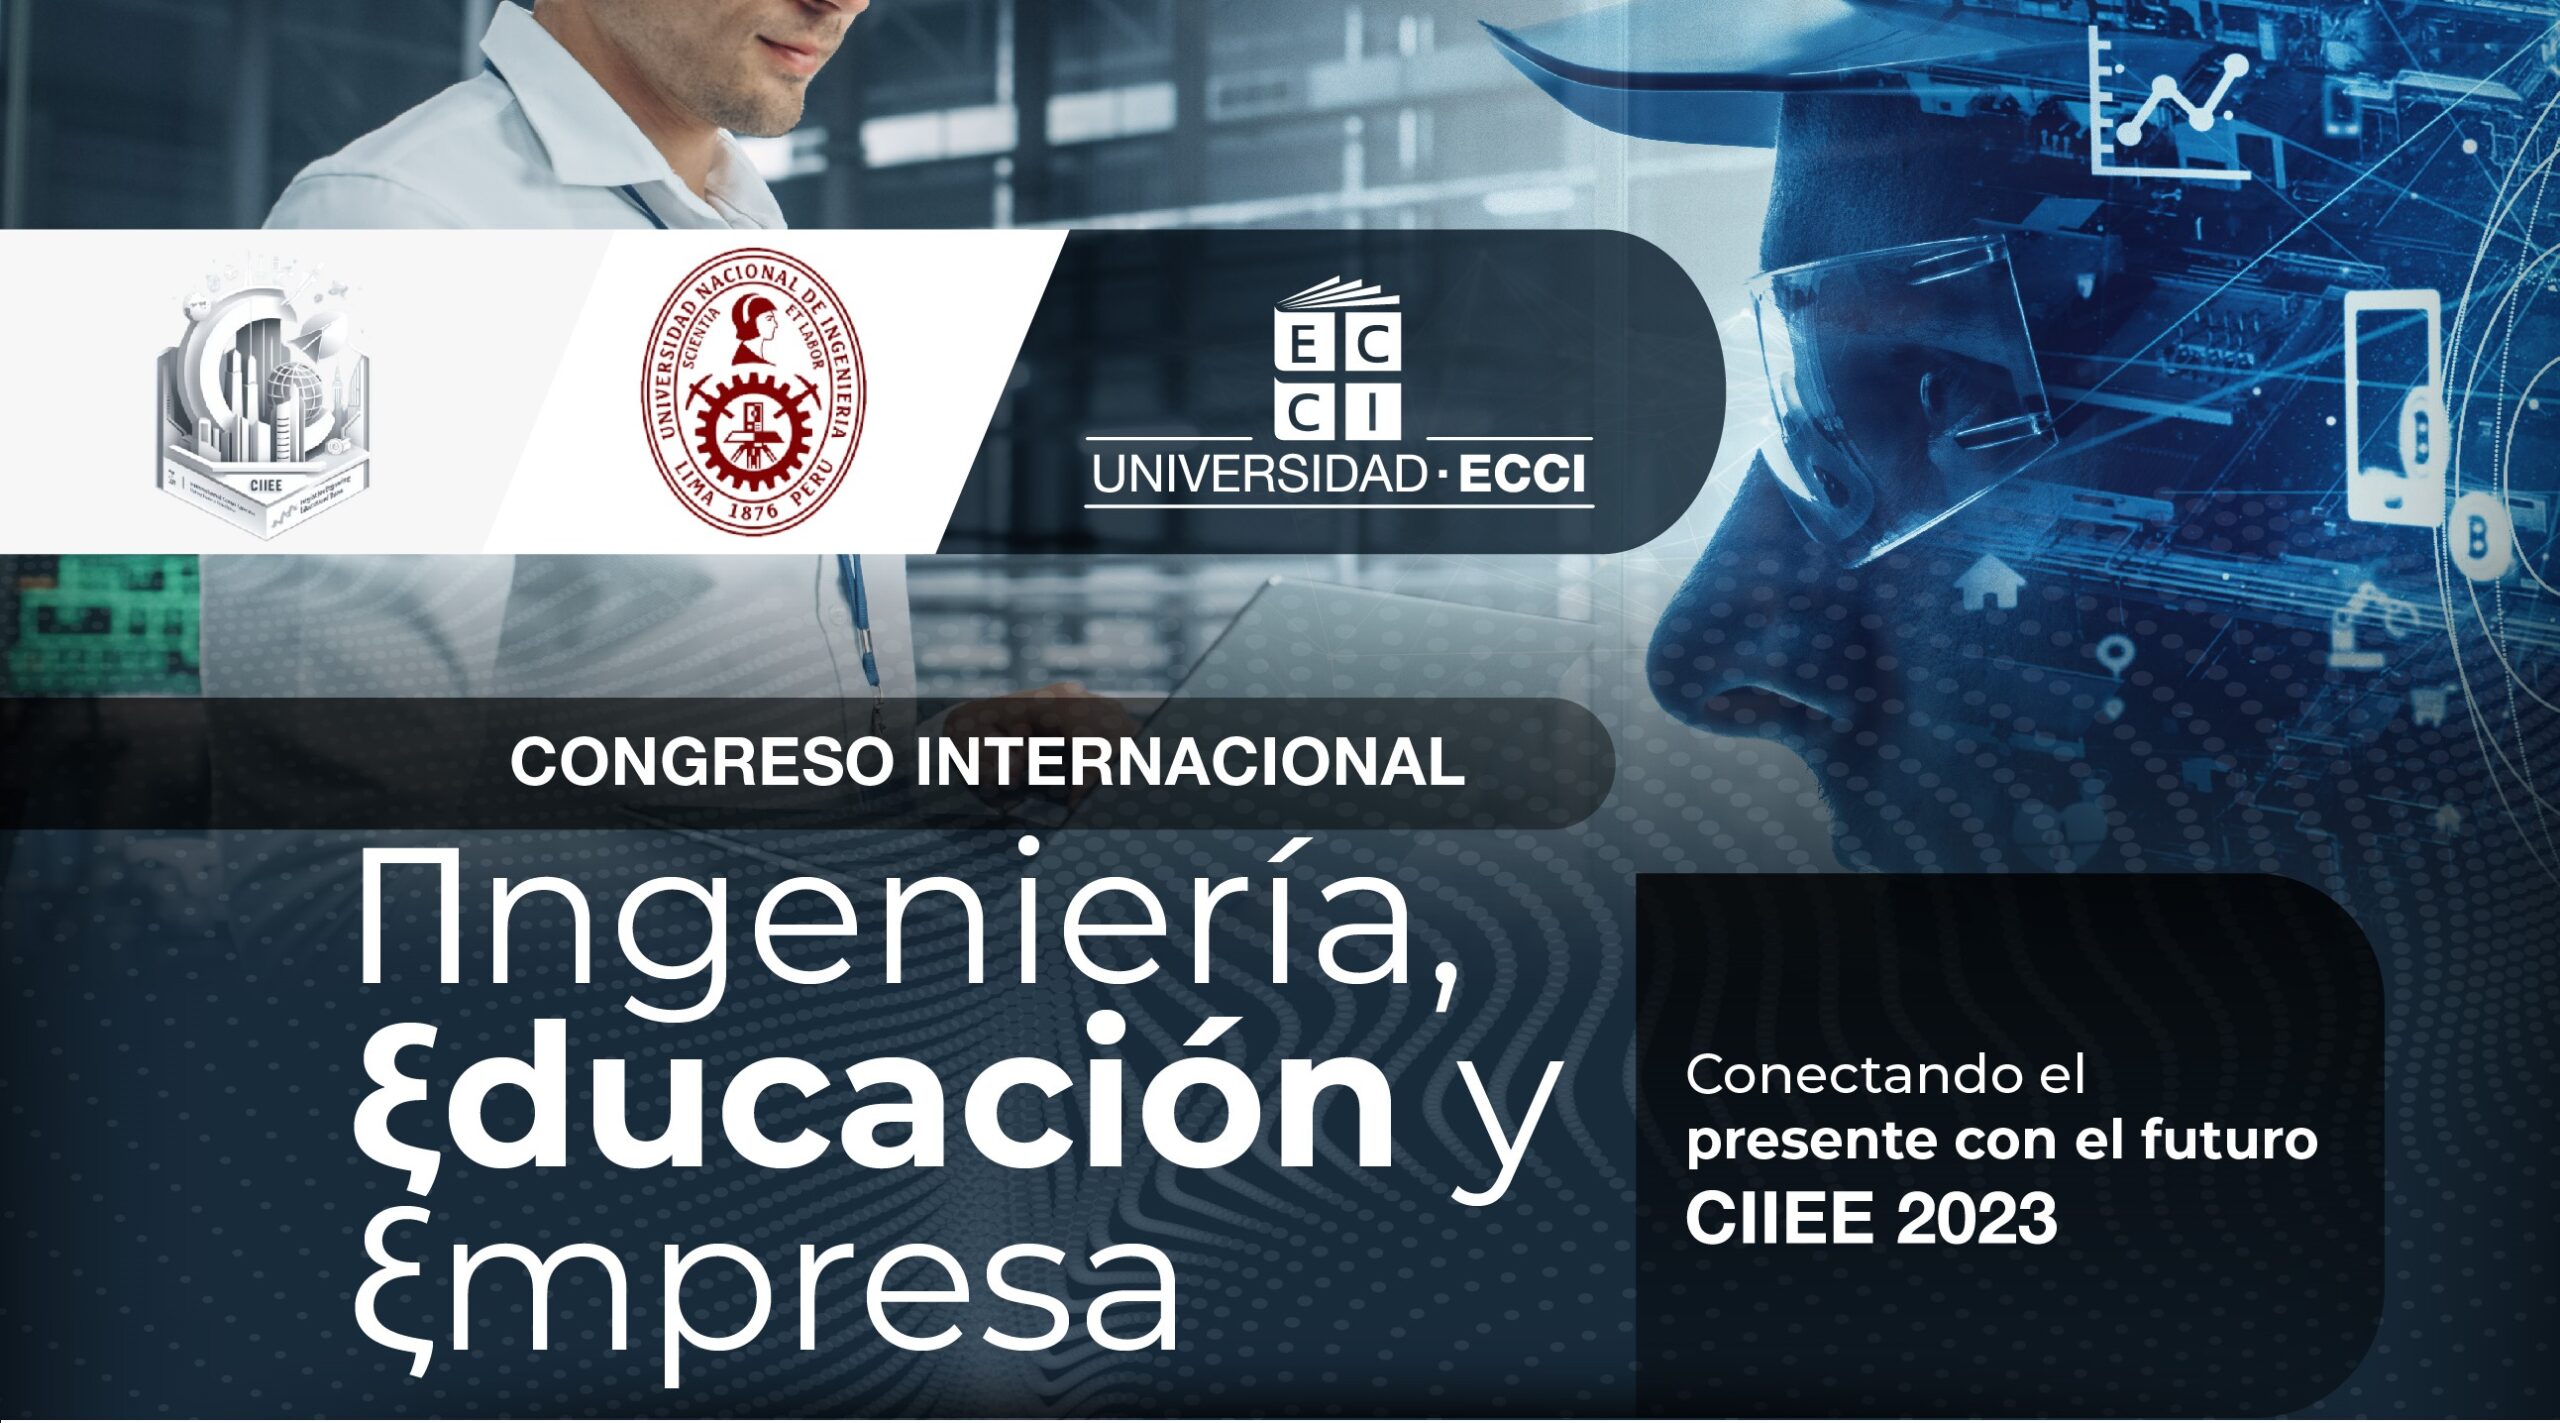 Congreso internacional Ingeniería, educación y empresa